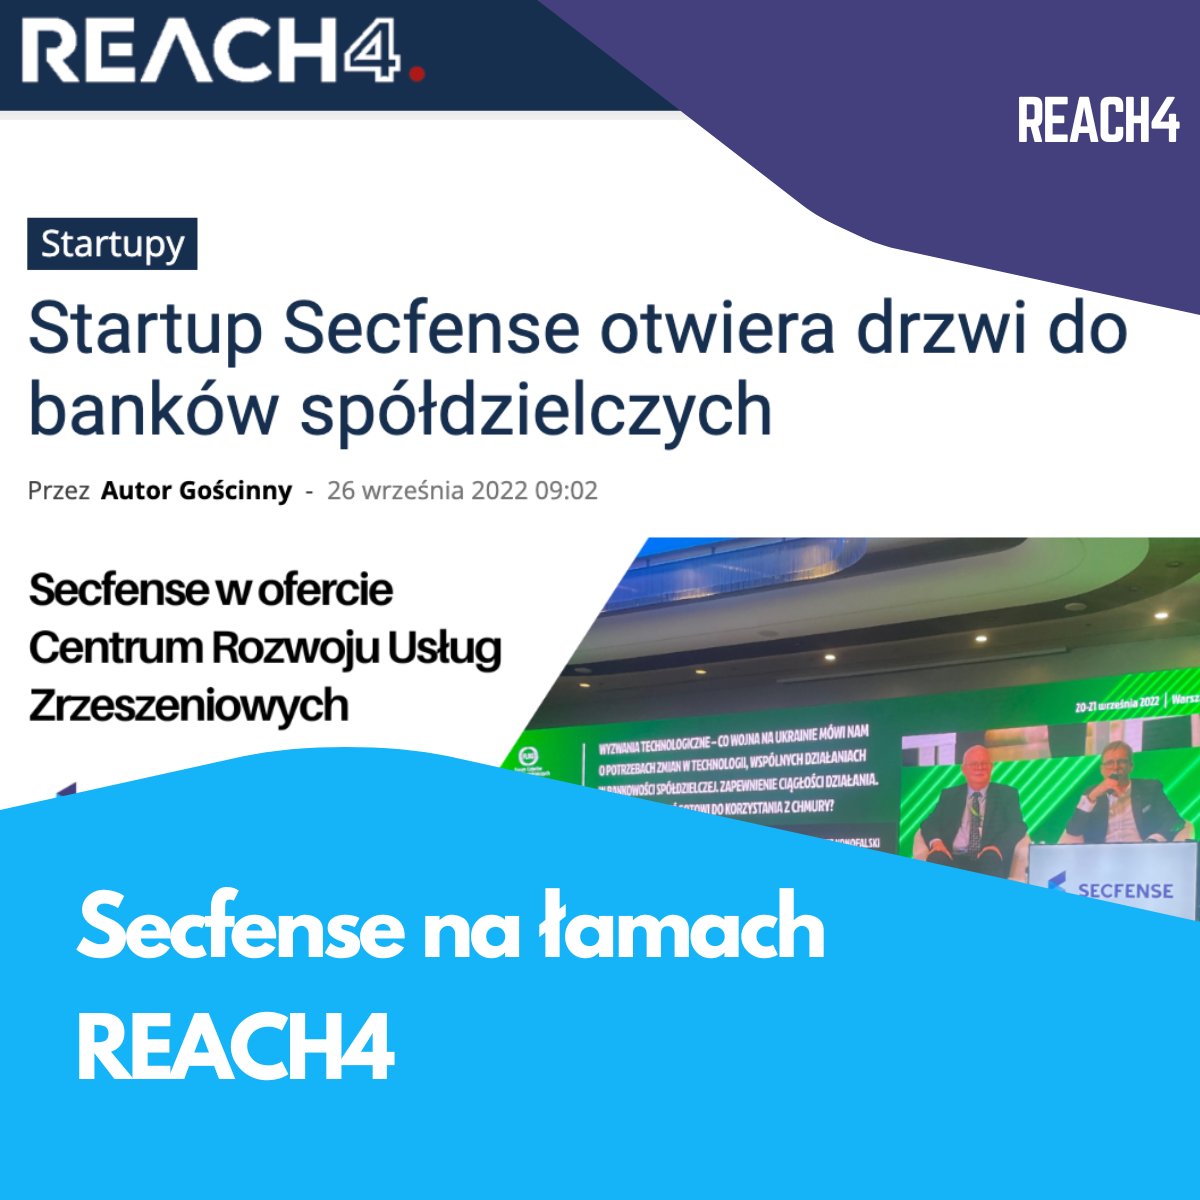 Reach4.biz o nowej ofercie Secfense dla banków spółdzieliczych